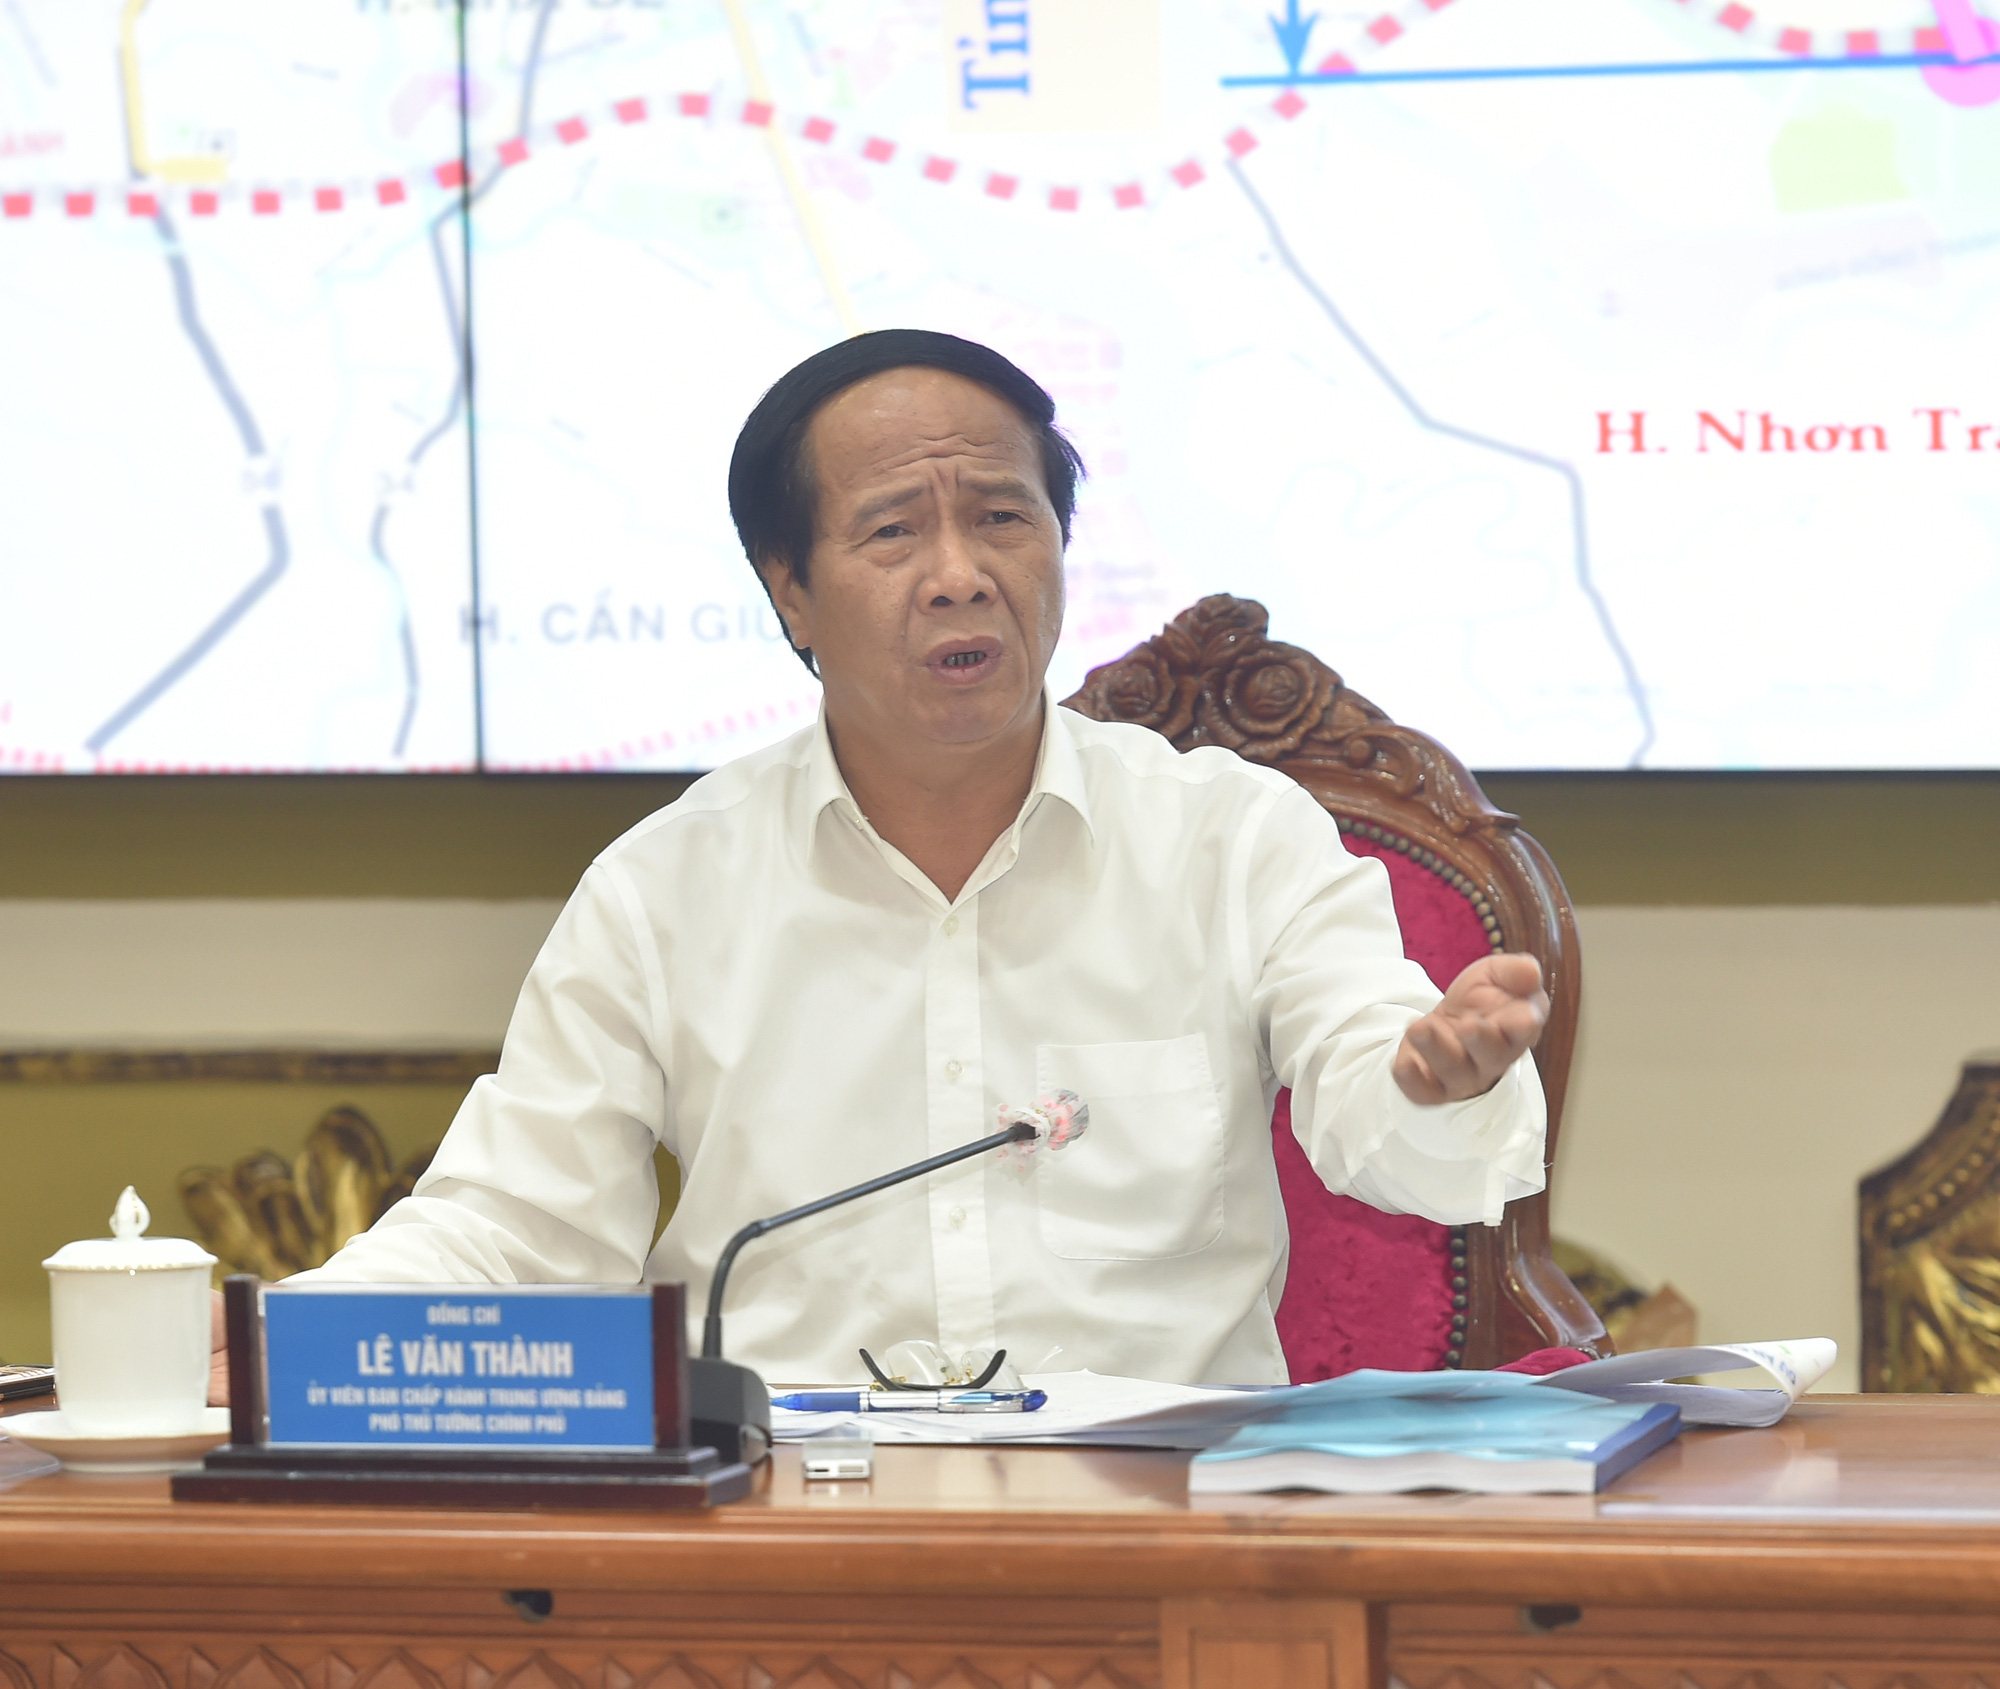 Đường vành đai đắt nhất Việt Nam ở TP.HCM - 1.000 tỷ/km vì sao giá cắt cổ? - Ảnh 2.